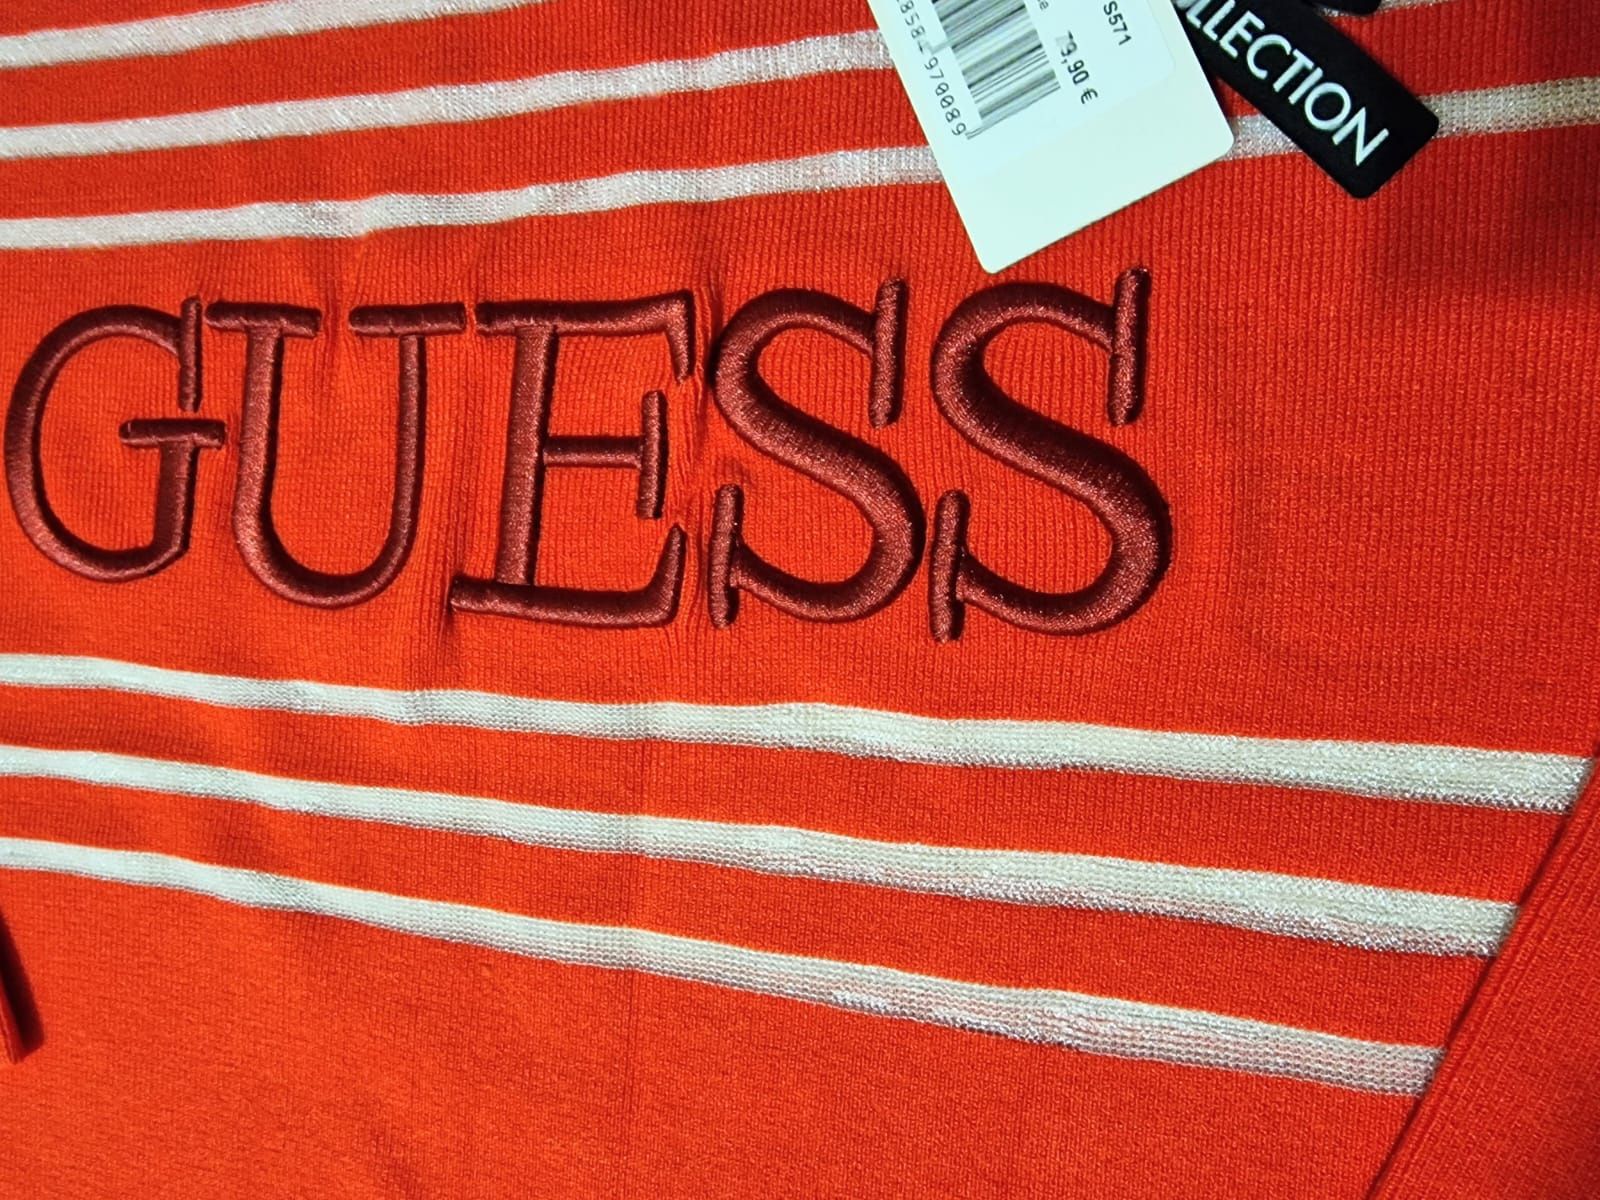 Bluza dama Guess originala,logo brodat, Italia, saculet, eticheta